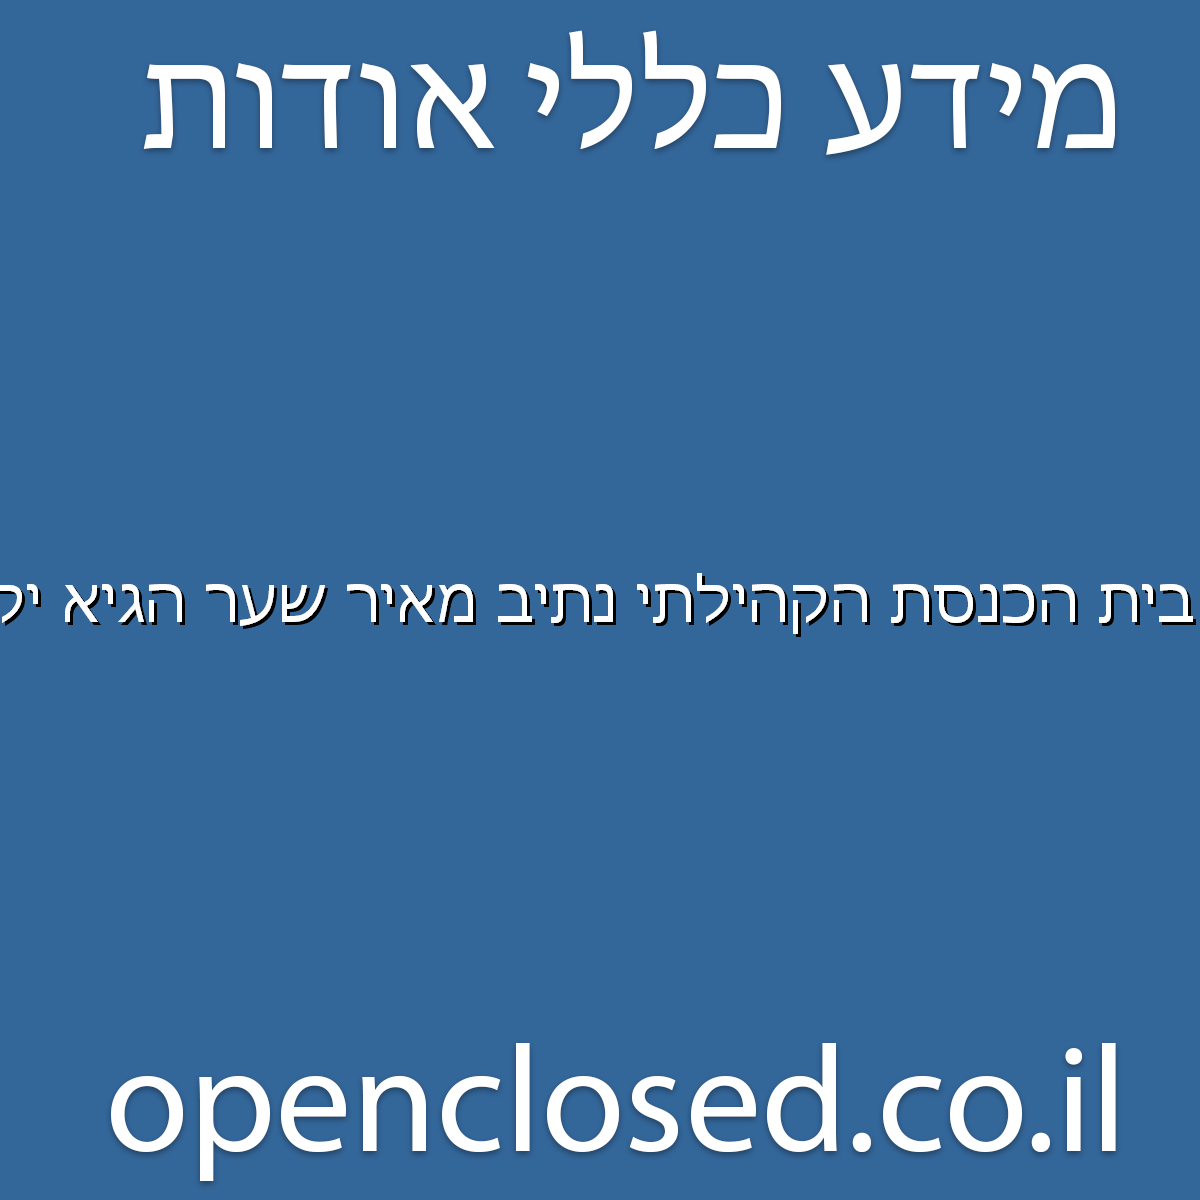 בית הכנסת הקהילתי נתיב מאיר שער הגיא יקנעם